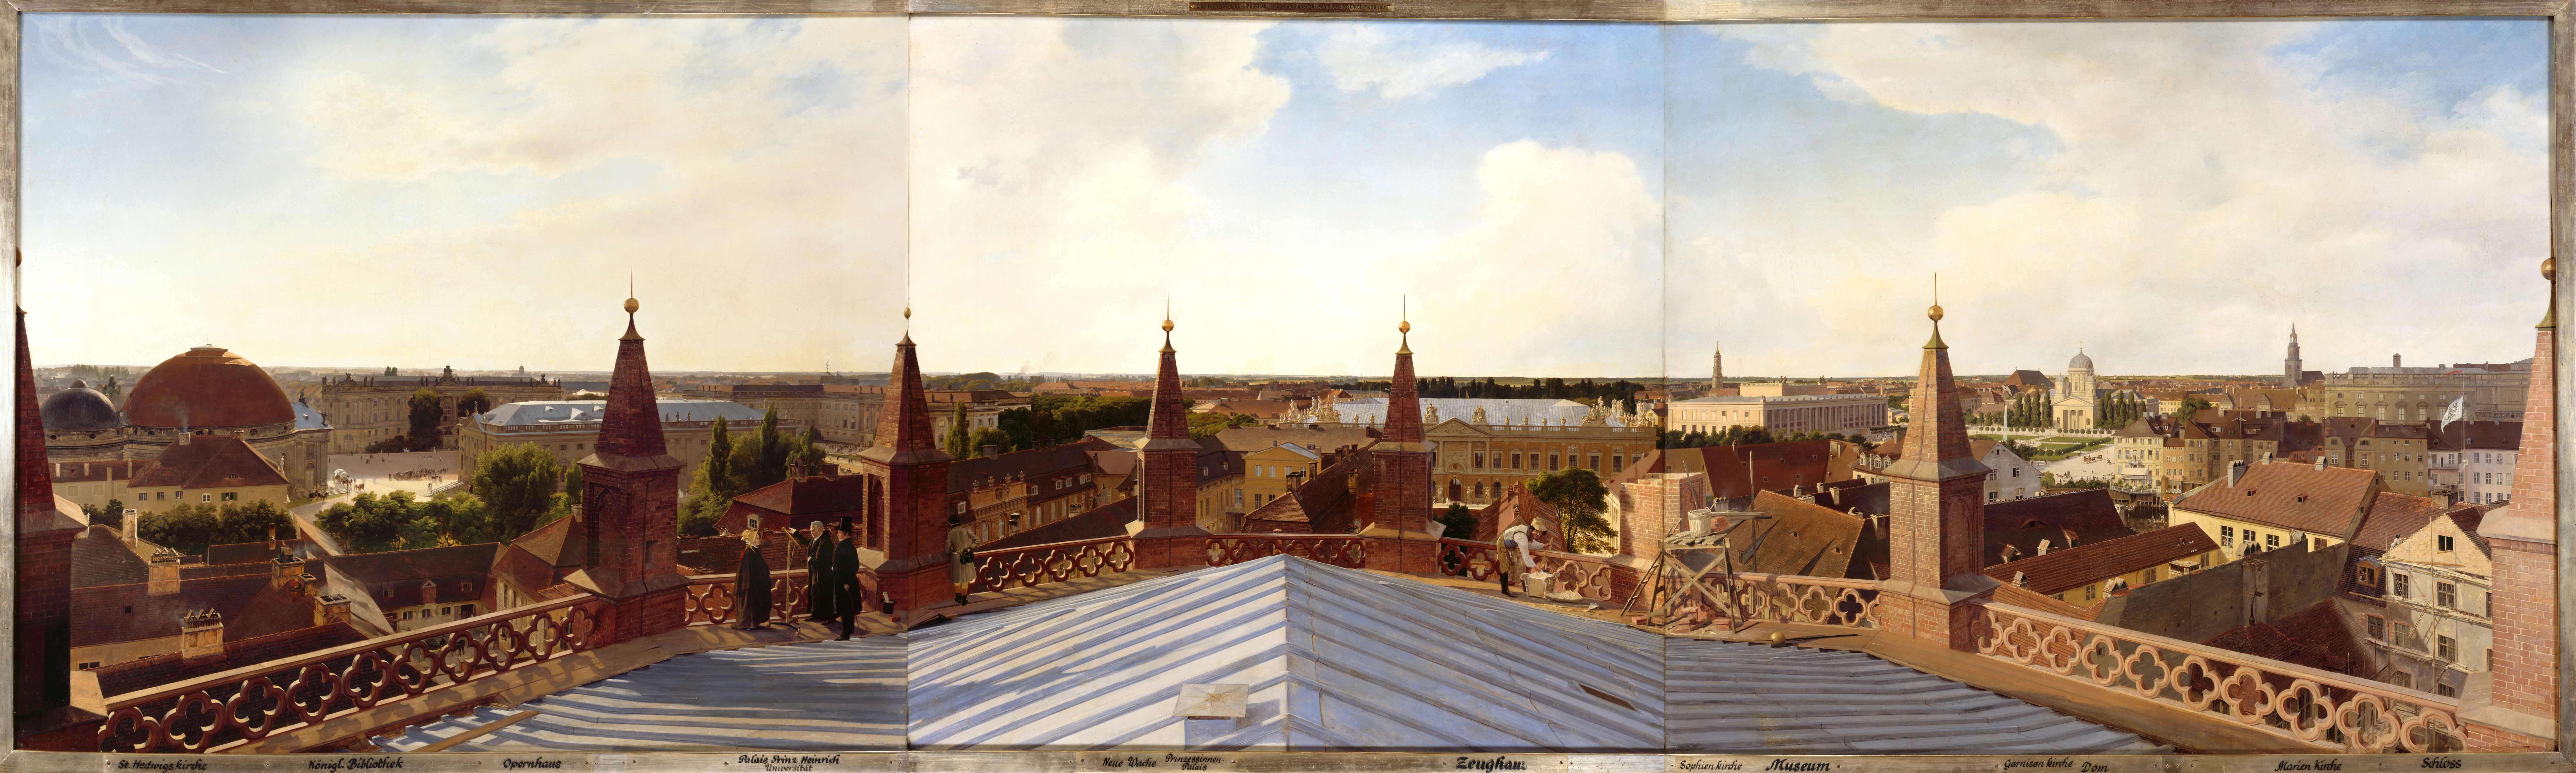 Gärtner, Eduard: Panorama von Berlin II, 1834, GK I 6179. (Stiftung Preußische Schlösser und Gärten Berlin-Brandenburg CC BY-NC-SA)